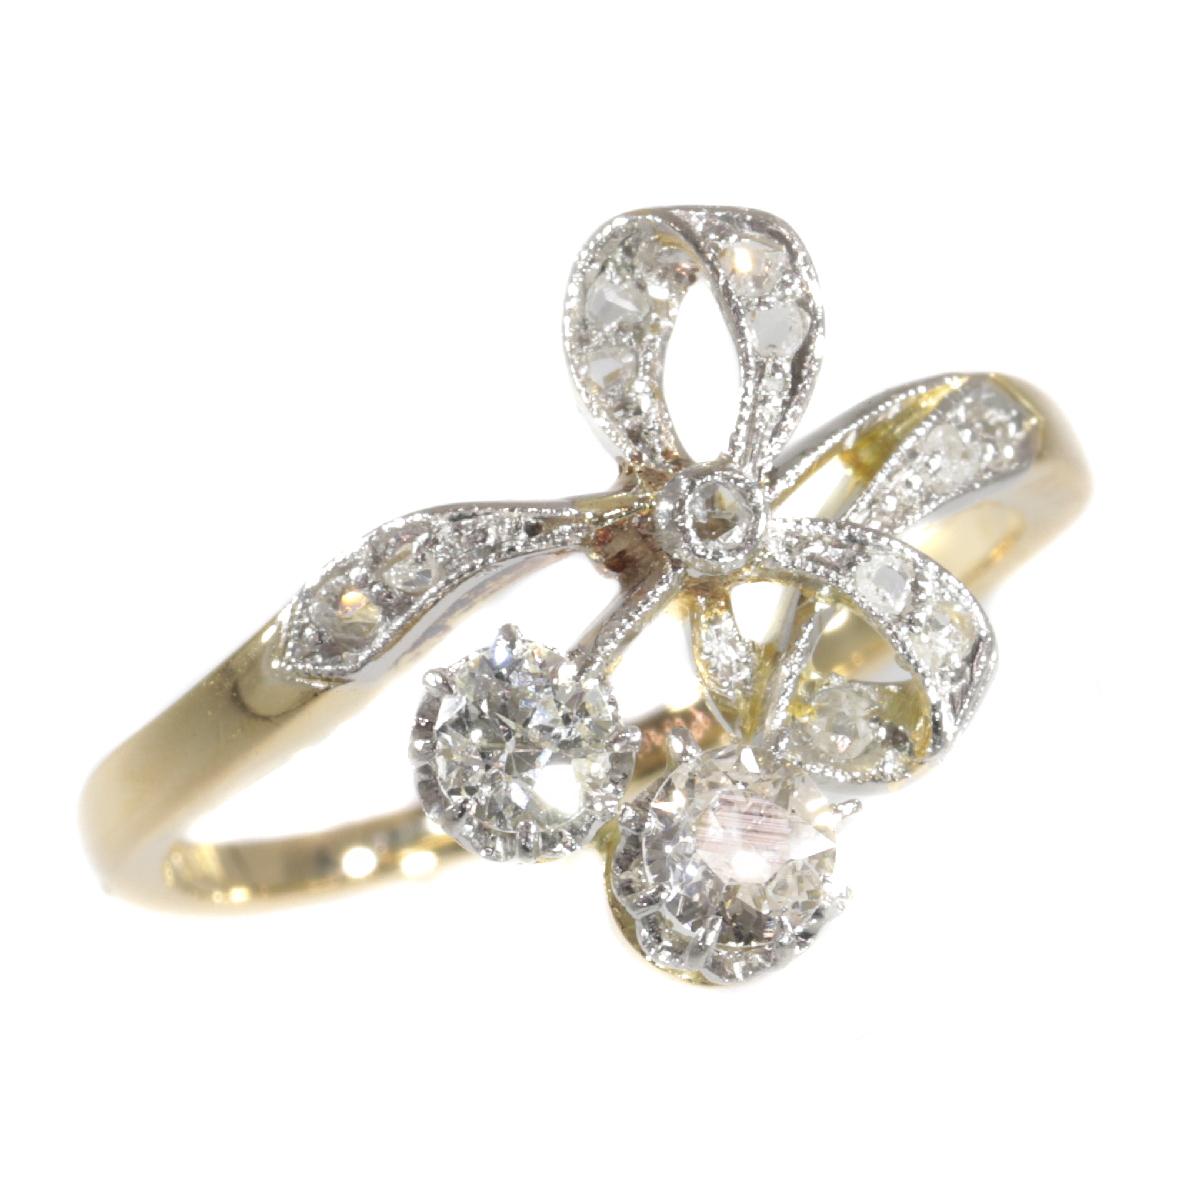 Charming Belle Époque Diamond Engagement Ring, 1900s For Sale 4